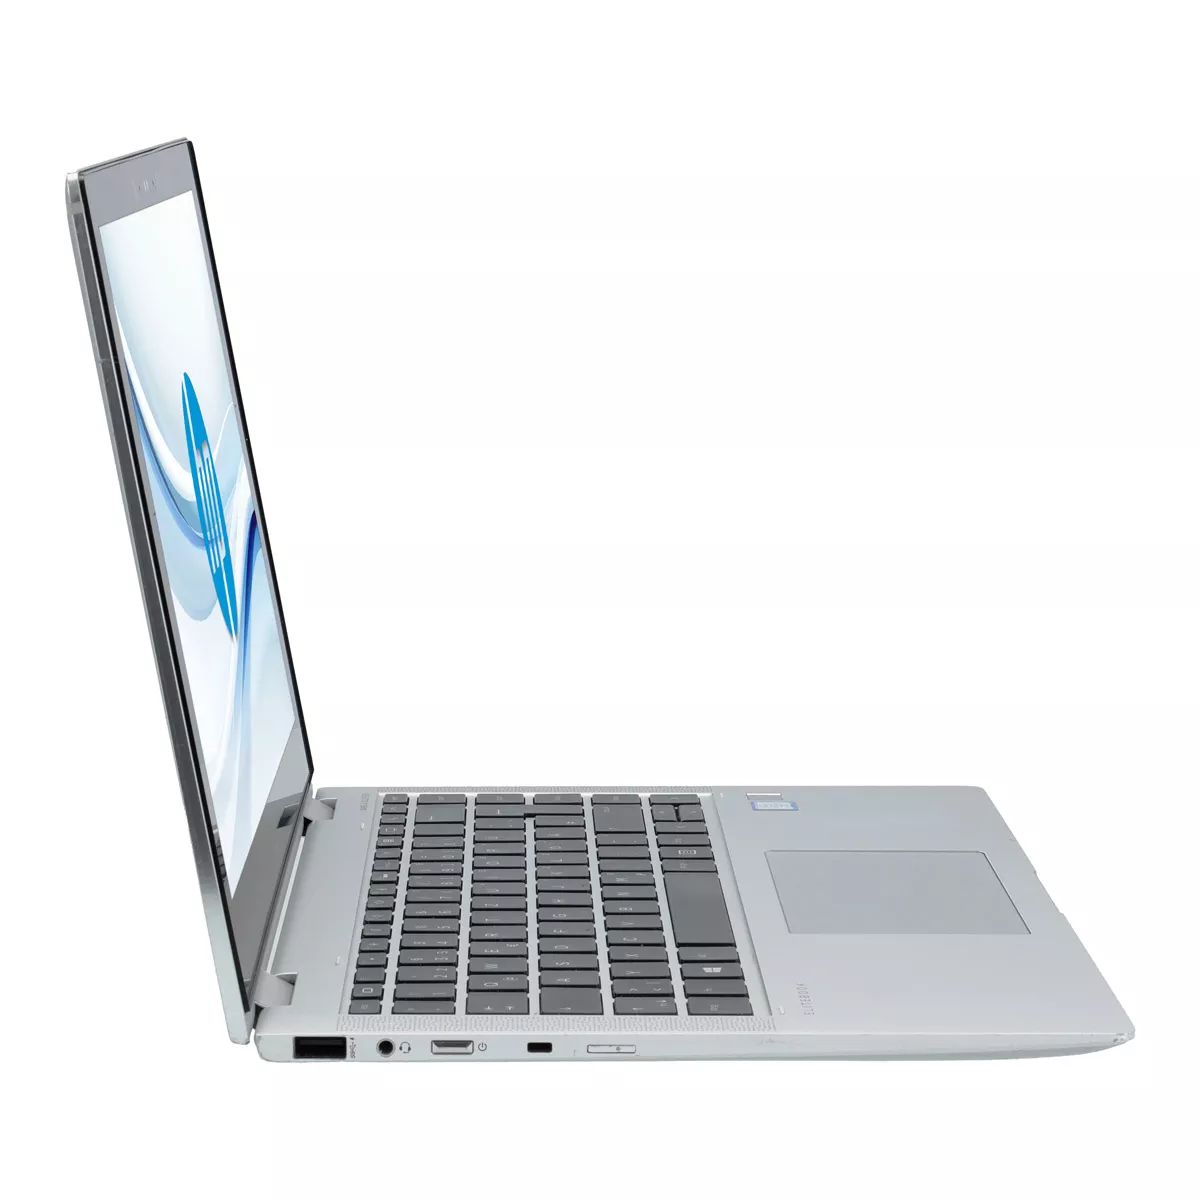 HP EliteBook x360 1040 G6 Core i7 8565U 16 GB 240 GB M.2 nVME SSD Touch Webcam A